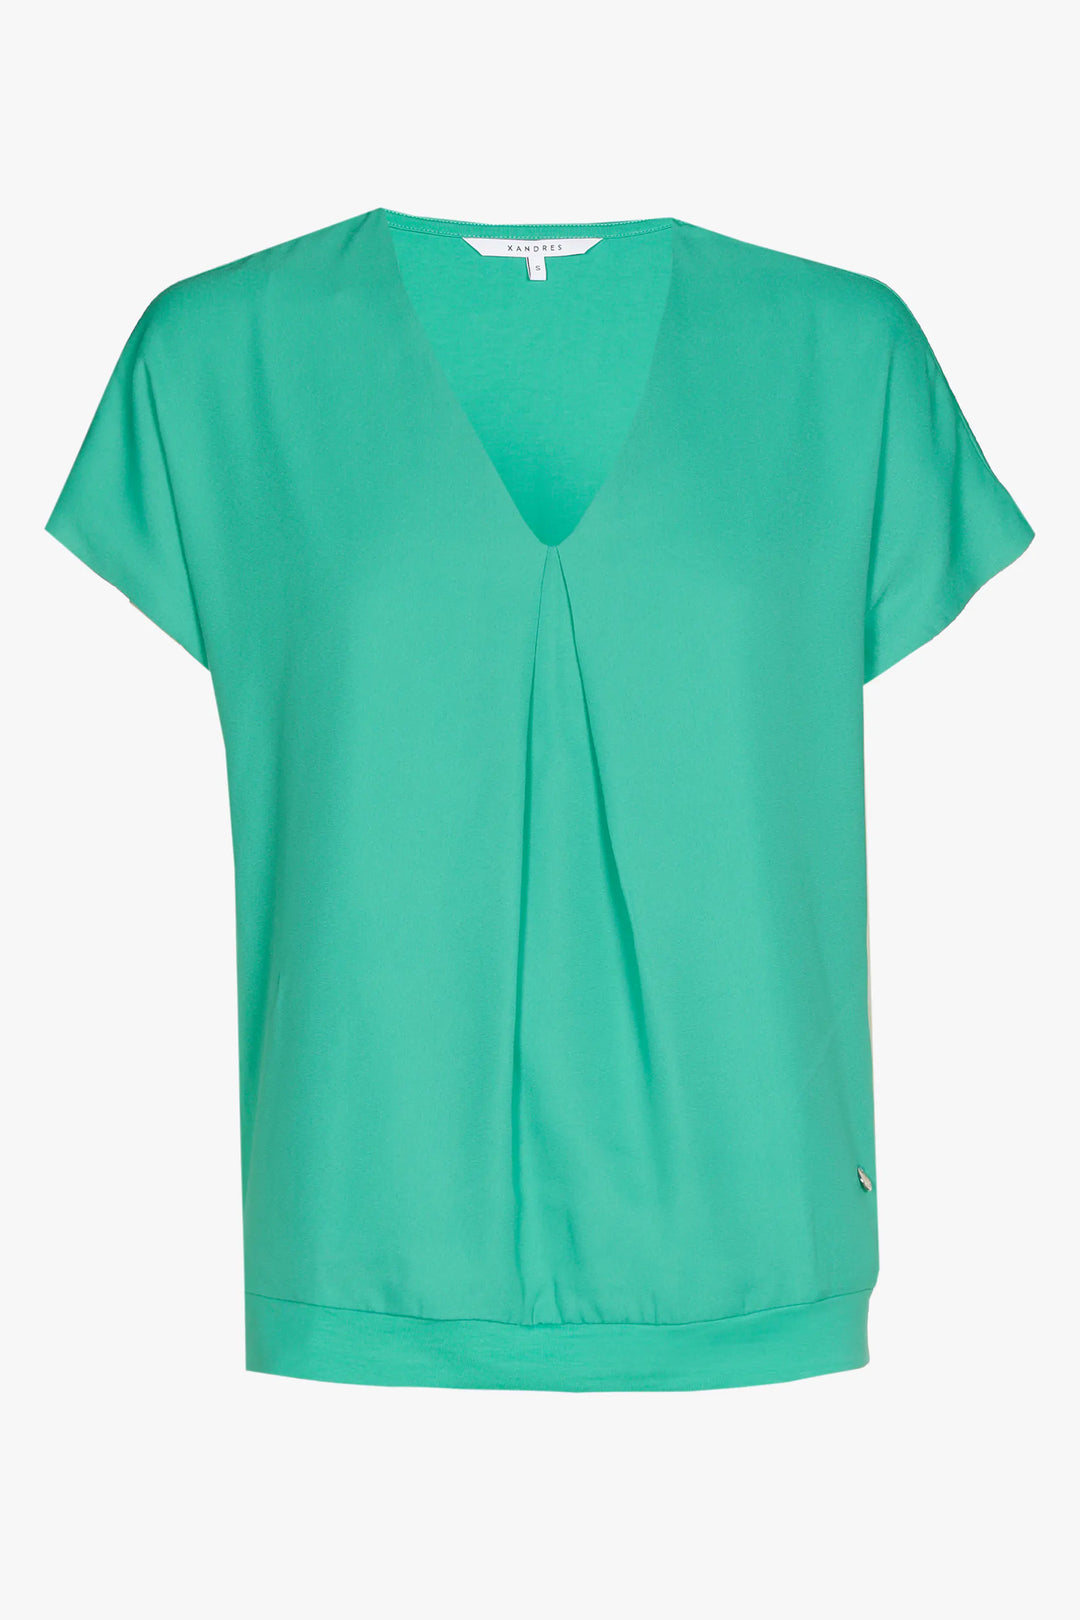 fresh mint shirt - xandres - - grote maten - dameskleding - kledingwinkel - herent - leuven